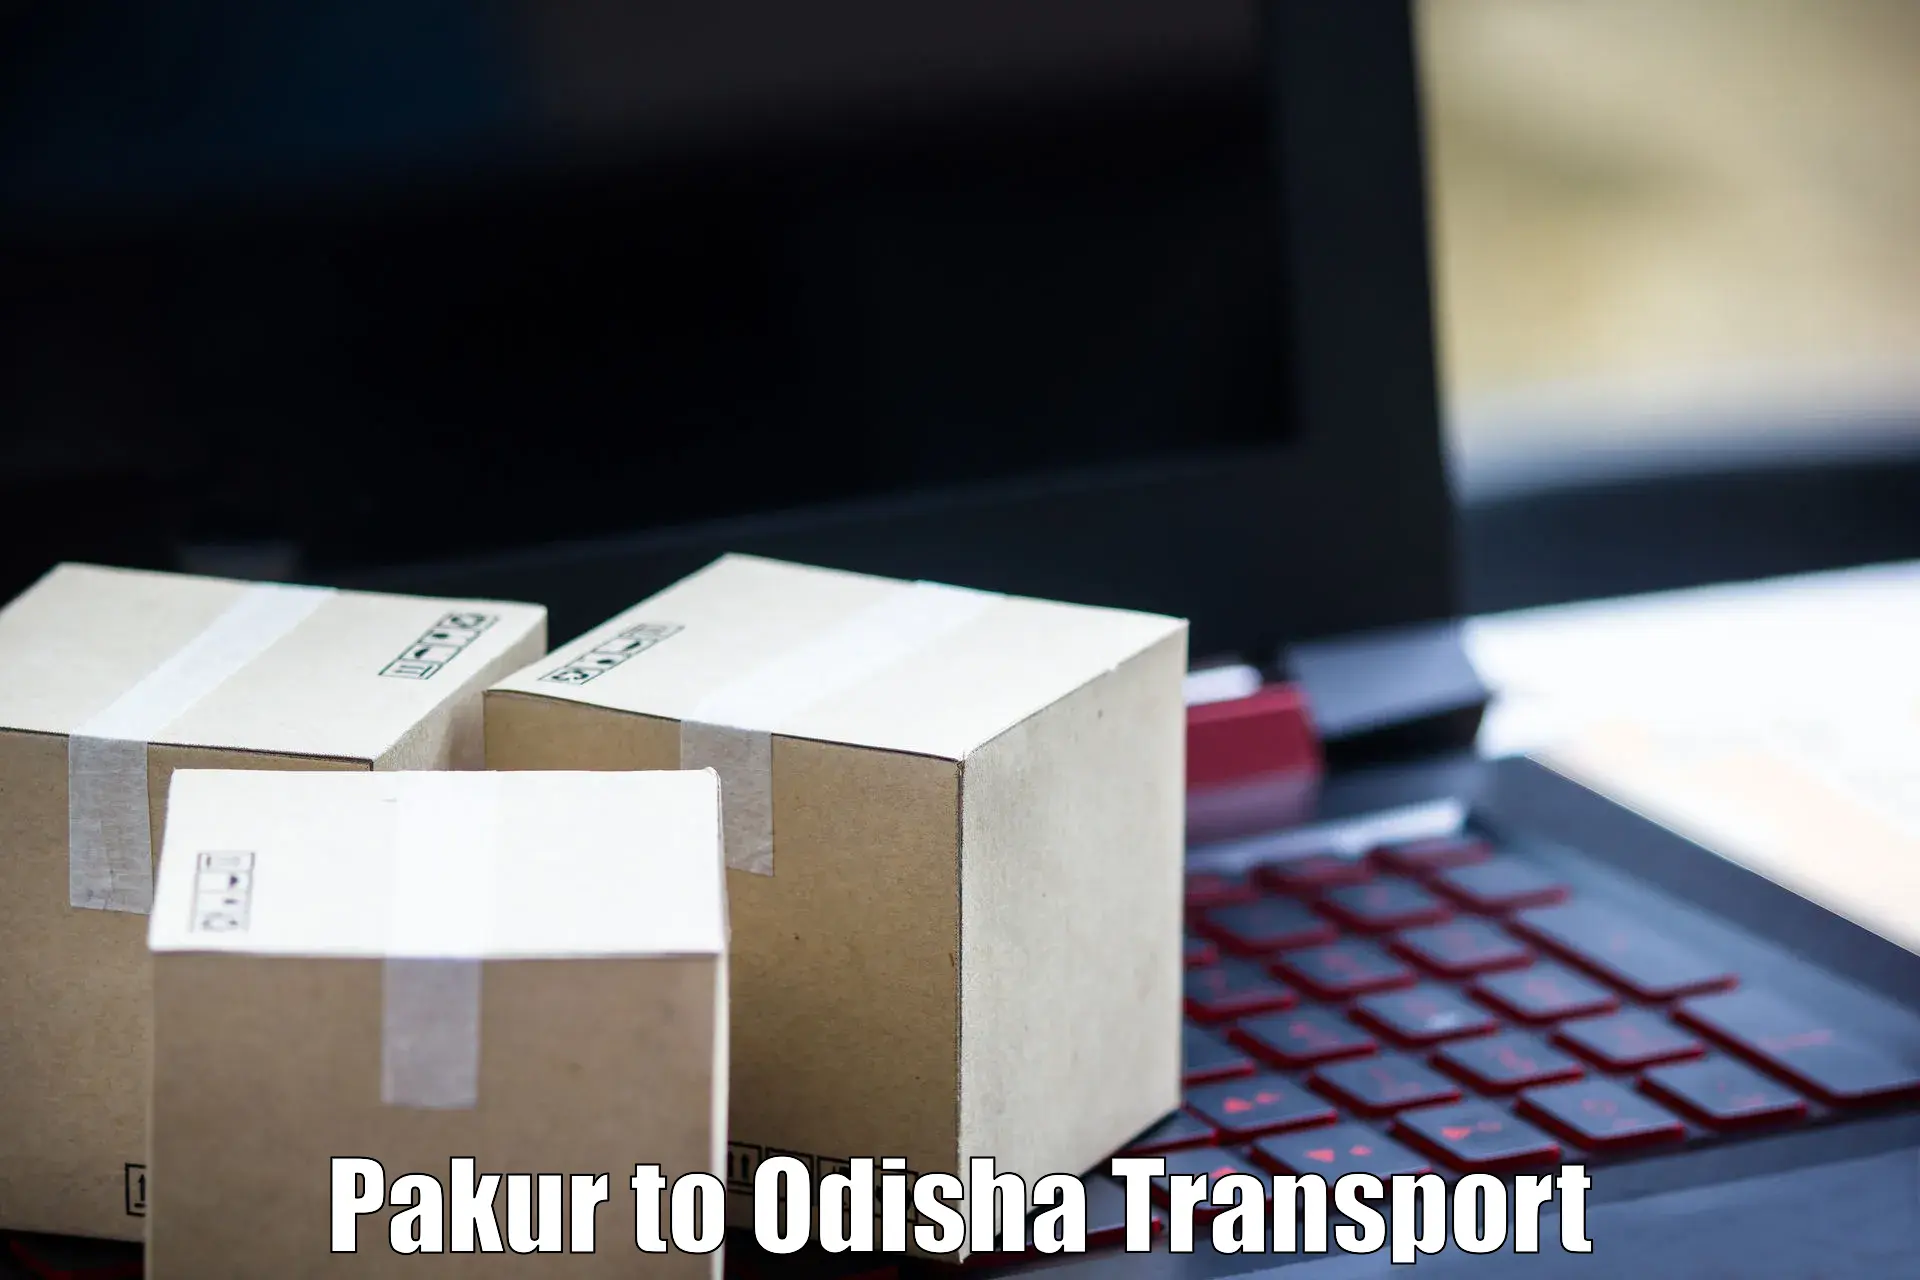 Nearby transport service Pakur to Tikiri